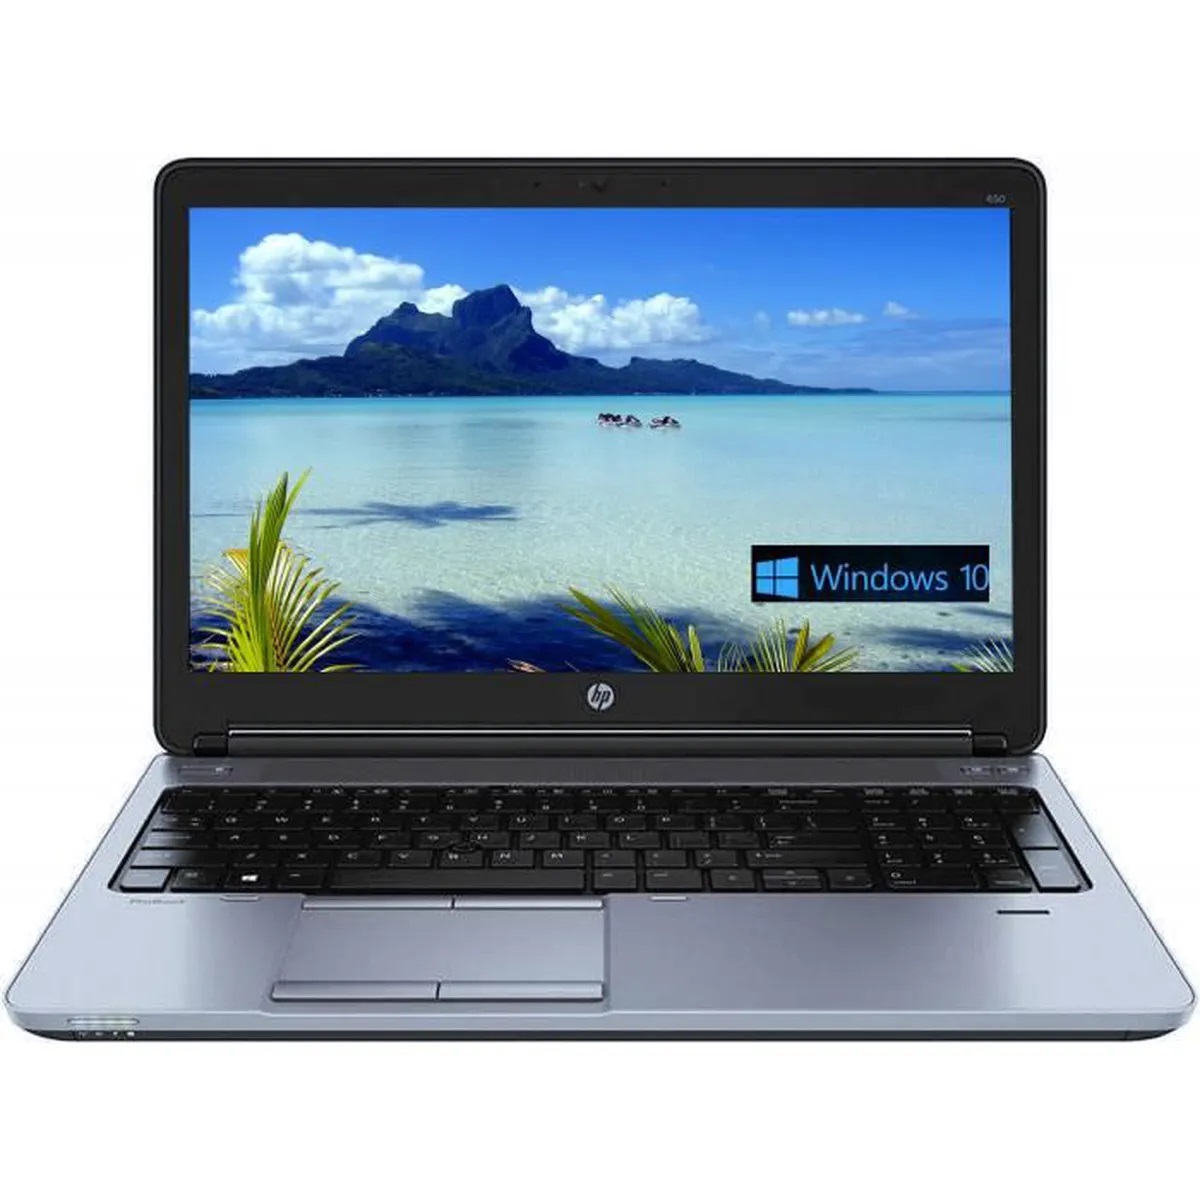  HP ProBook 650 G3